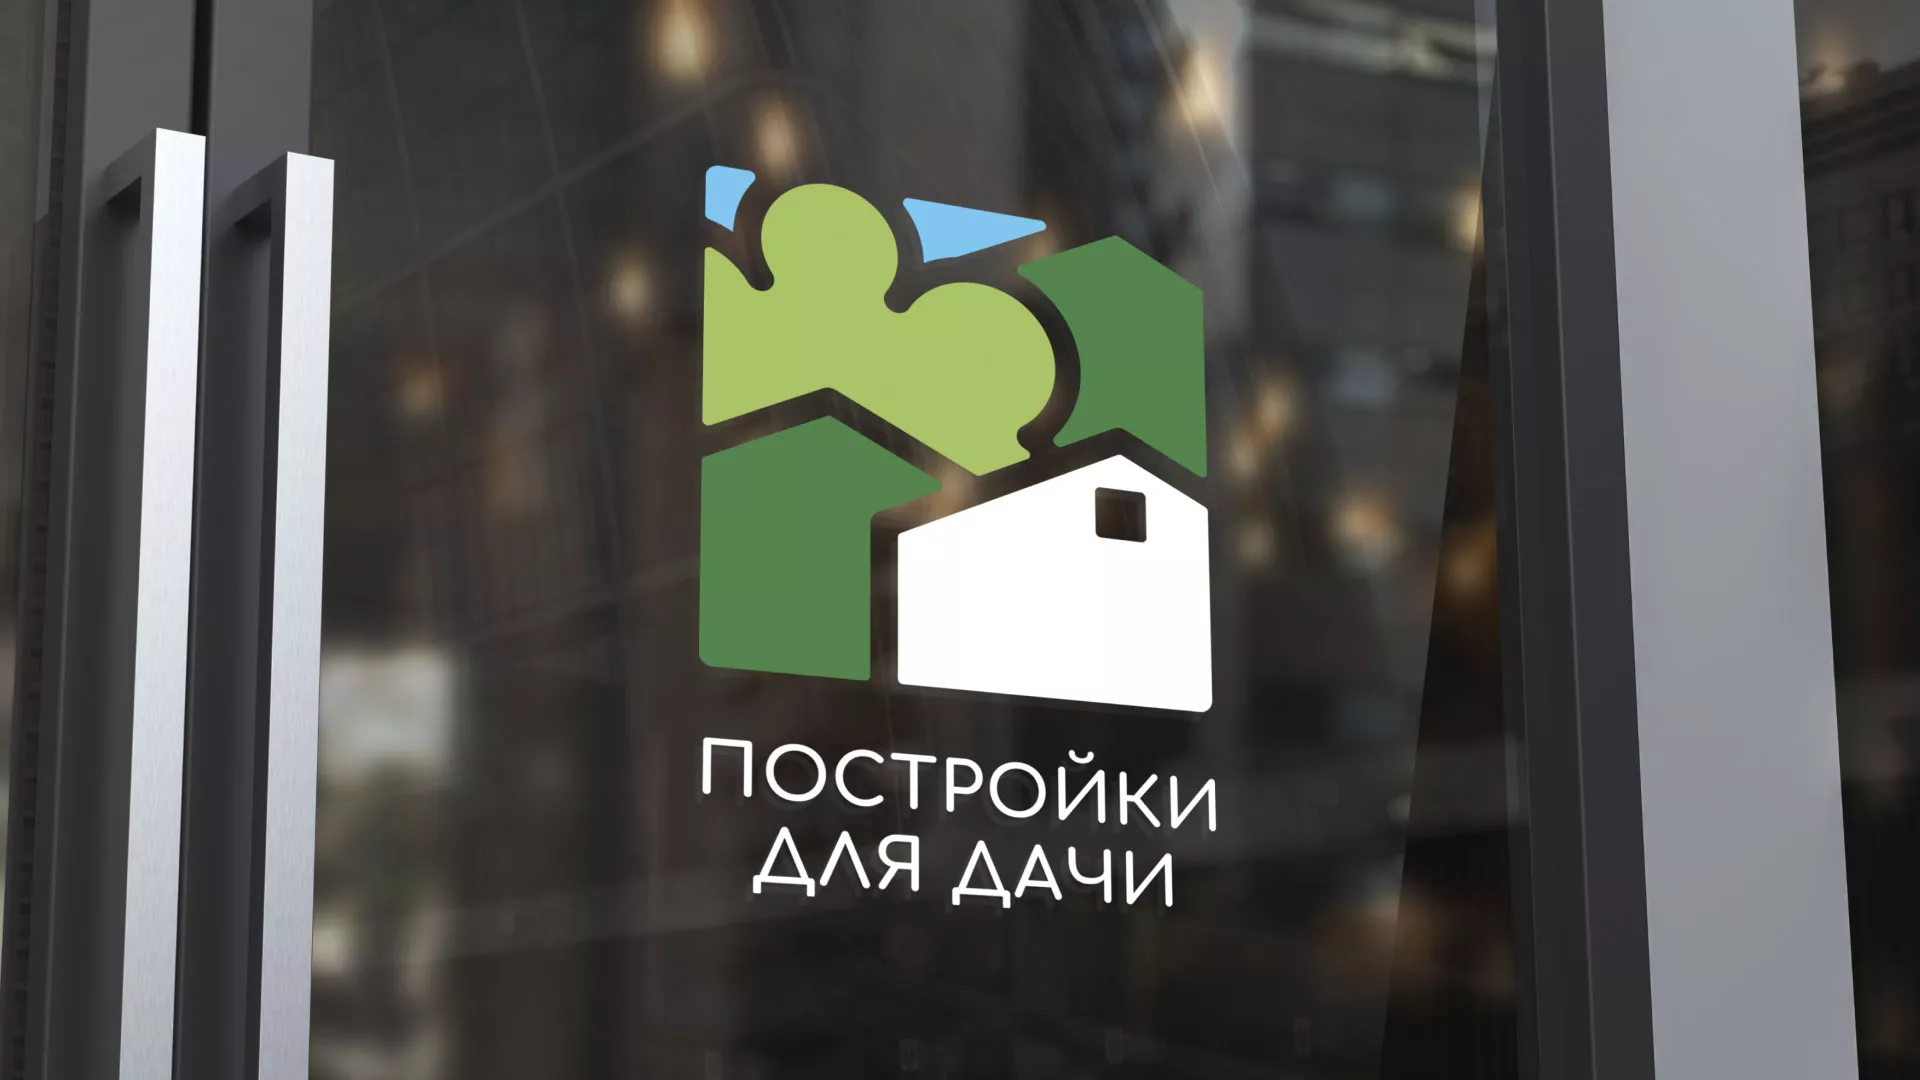 Разработка логотипа в Щербинке для компании «Постройки для дачи»